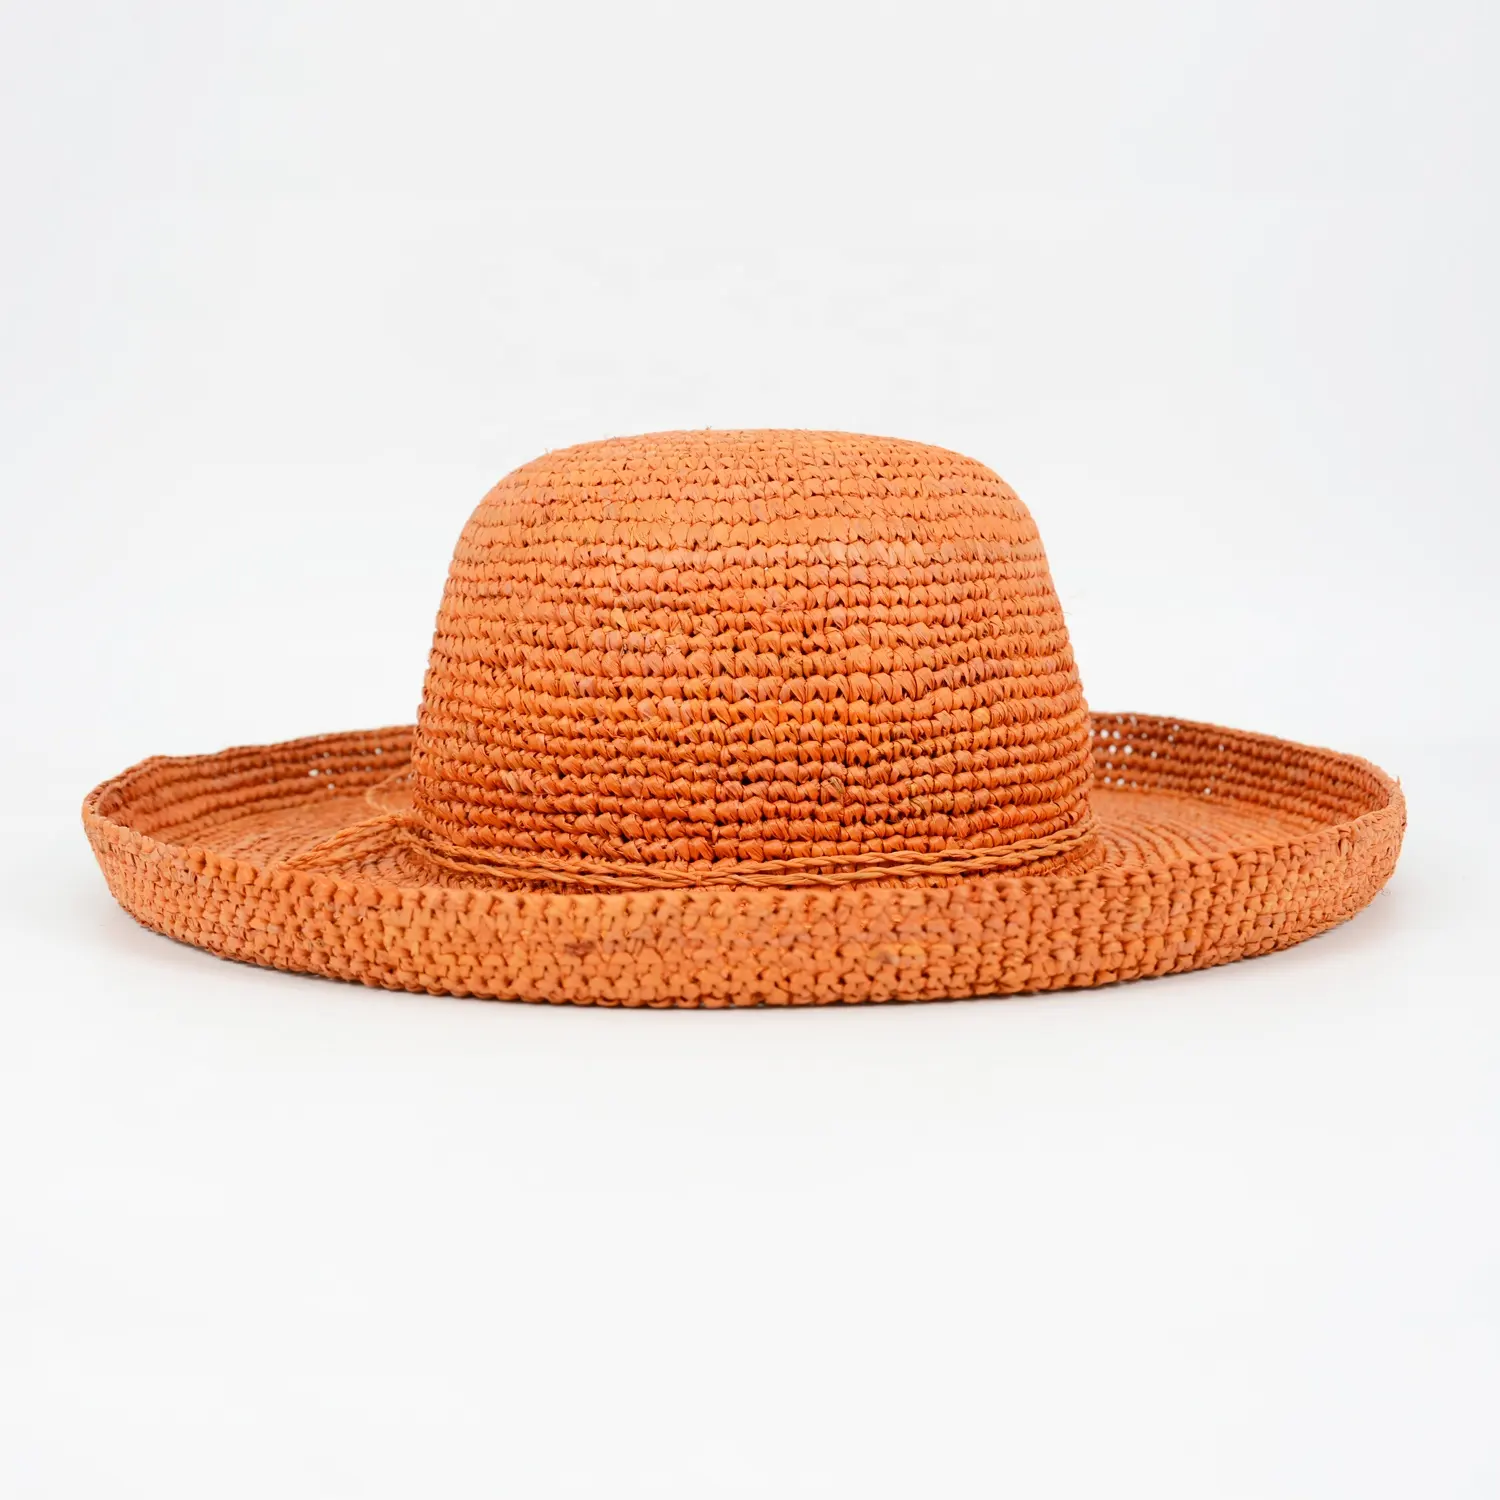 Chapéus de palha de crochê de ráfia laranja para mulheres, chapéus de palha com aba larga, chapéus flexíveis para festas e pesca, chapéus de mão desenhados com grama natural, logotipo personalizado, mais vendidos